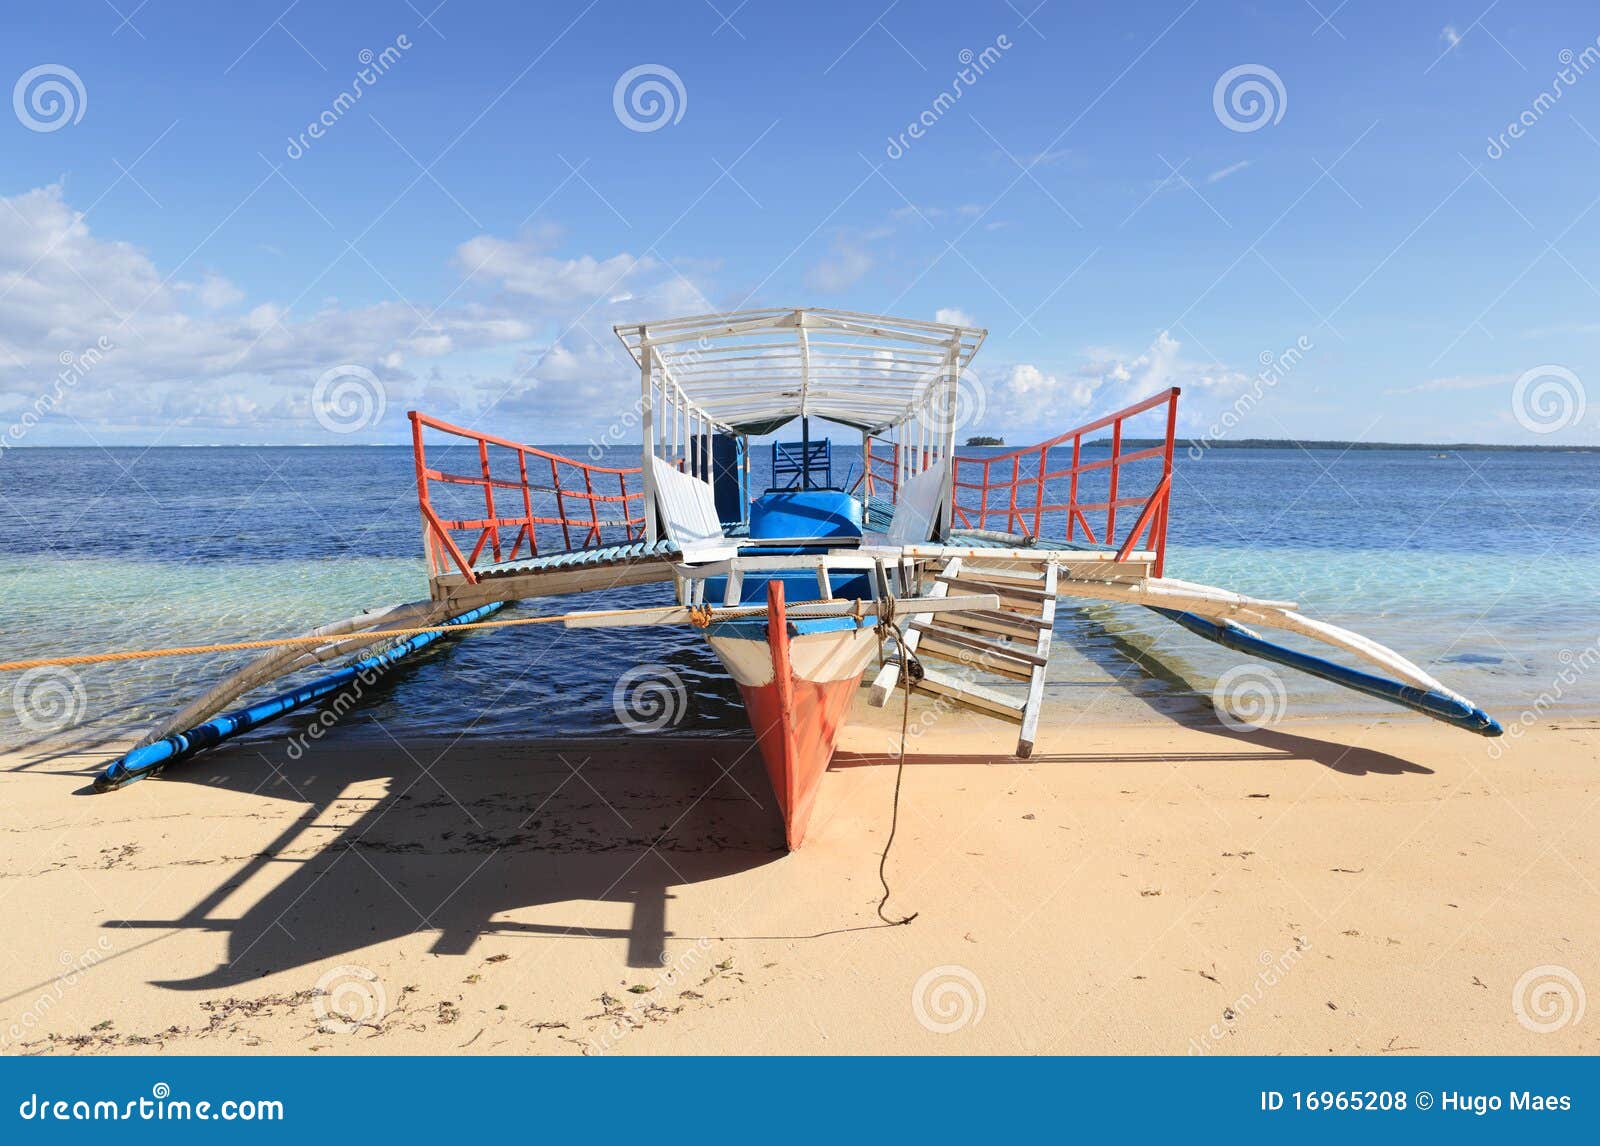 Tourism Bangka Boat Philippines Stock Photo - Image: 16965208